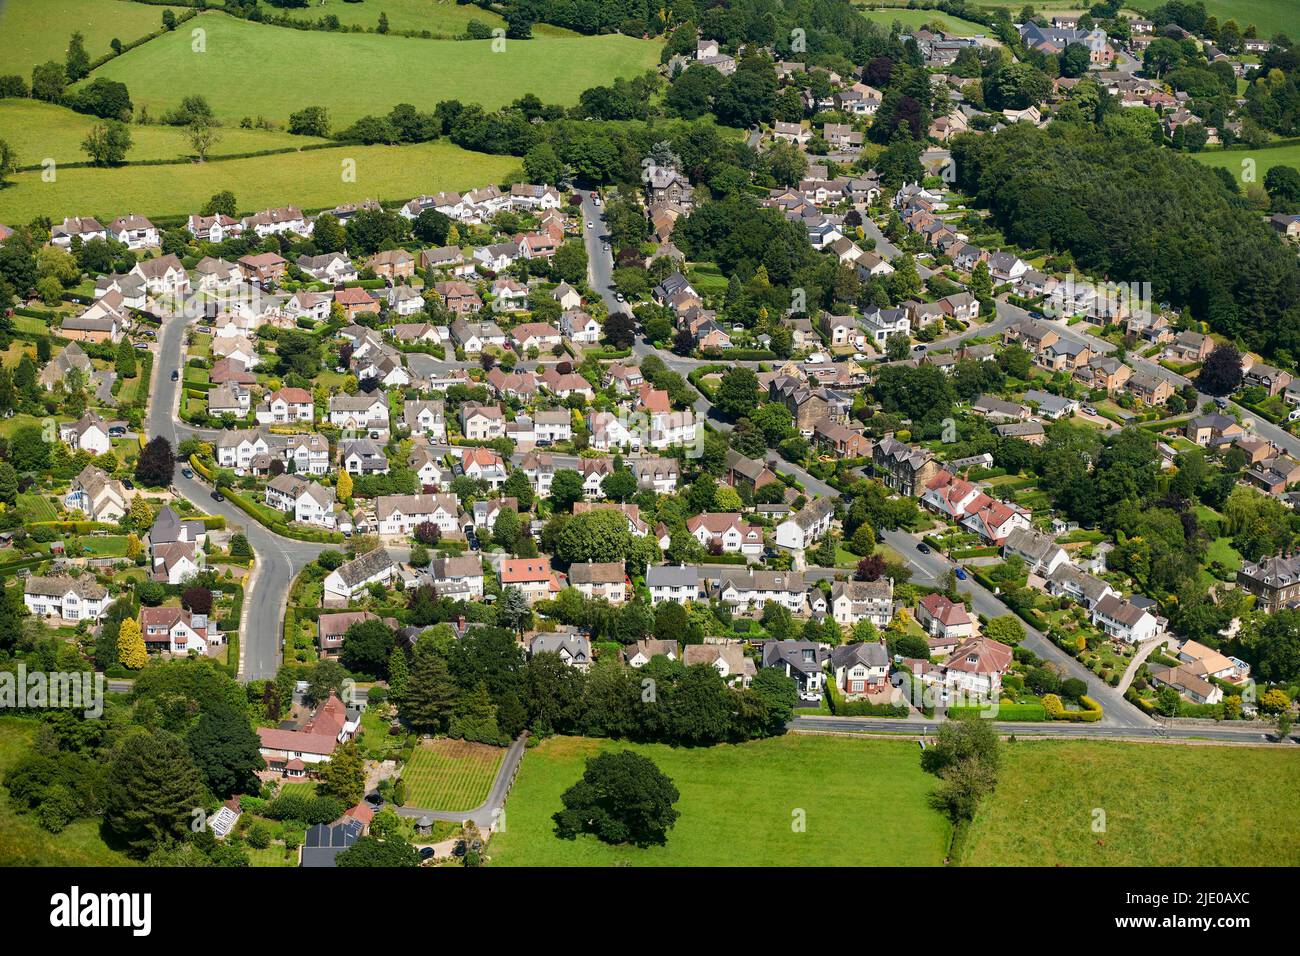 Una vista aerea delle case a schiera di classe media, a Pandal, Harrogate, North Yorkshire, Northern England, REGNO UNITO Foto Stock